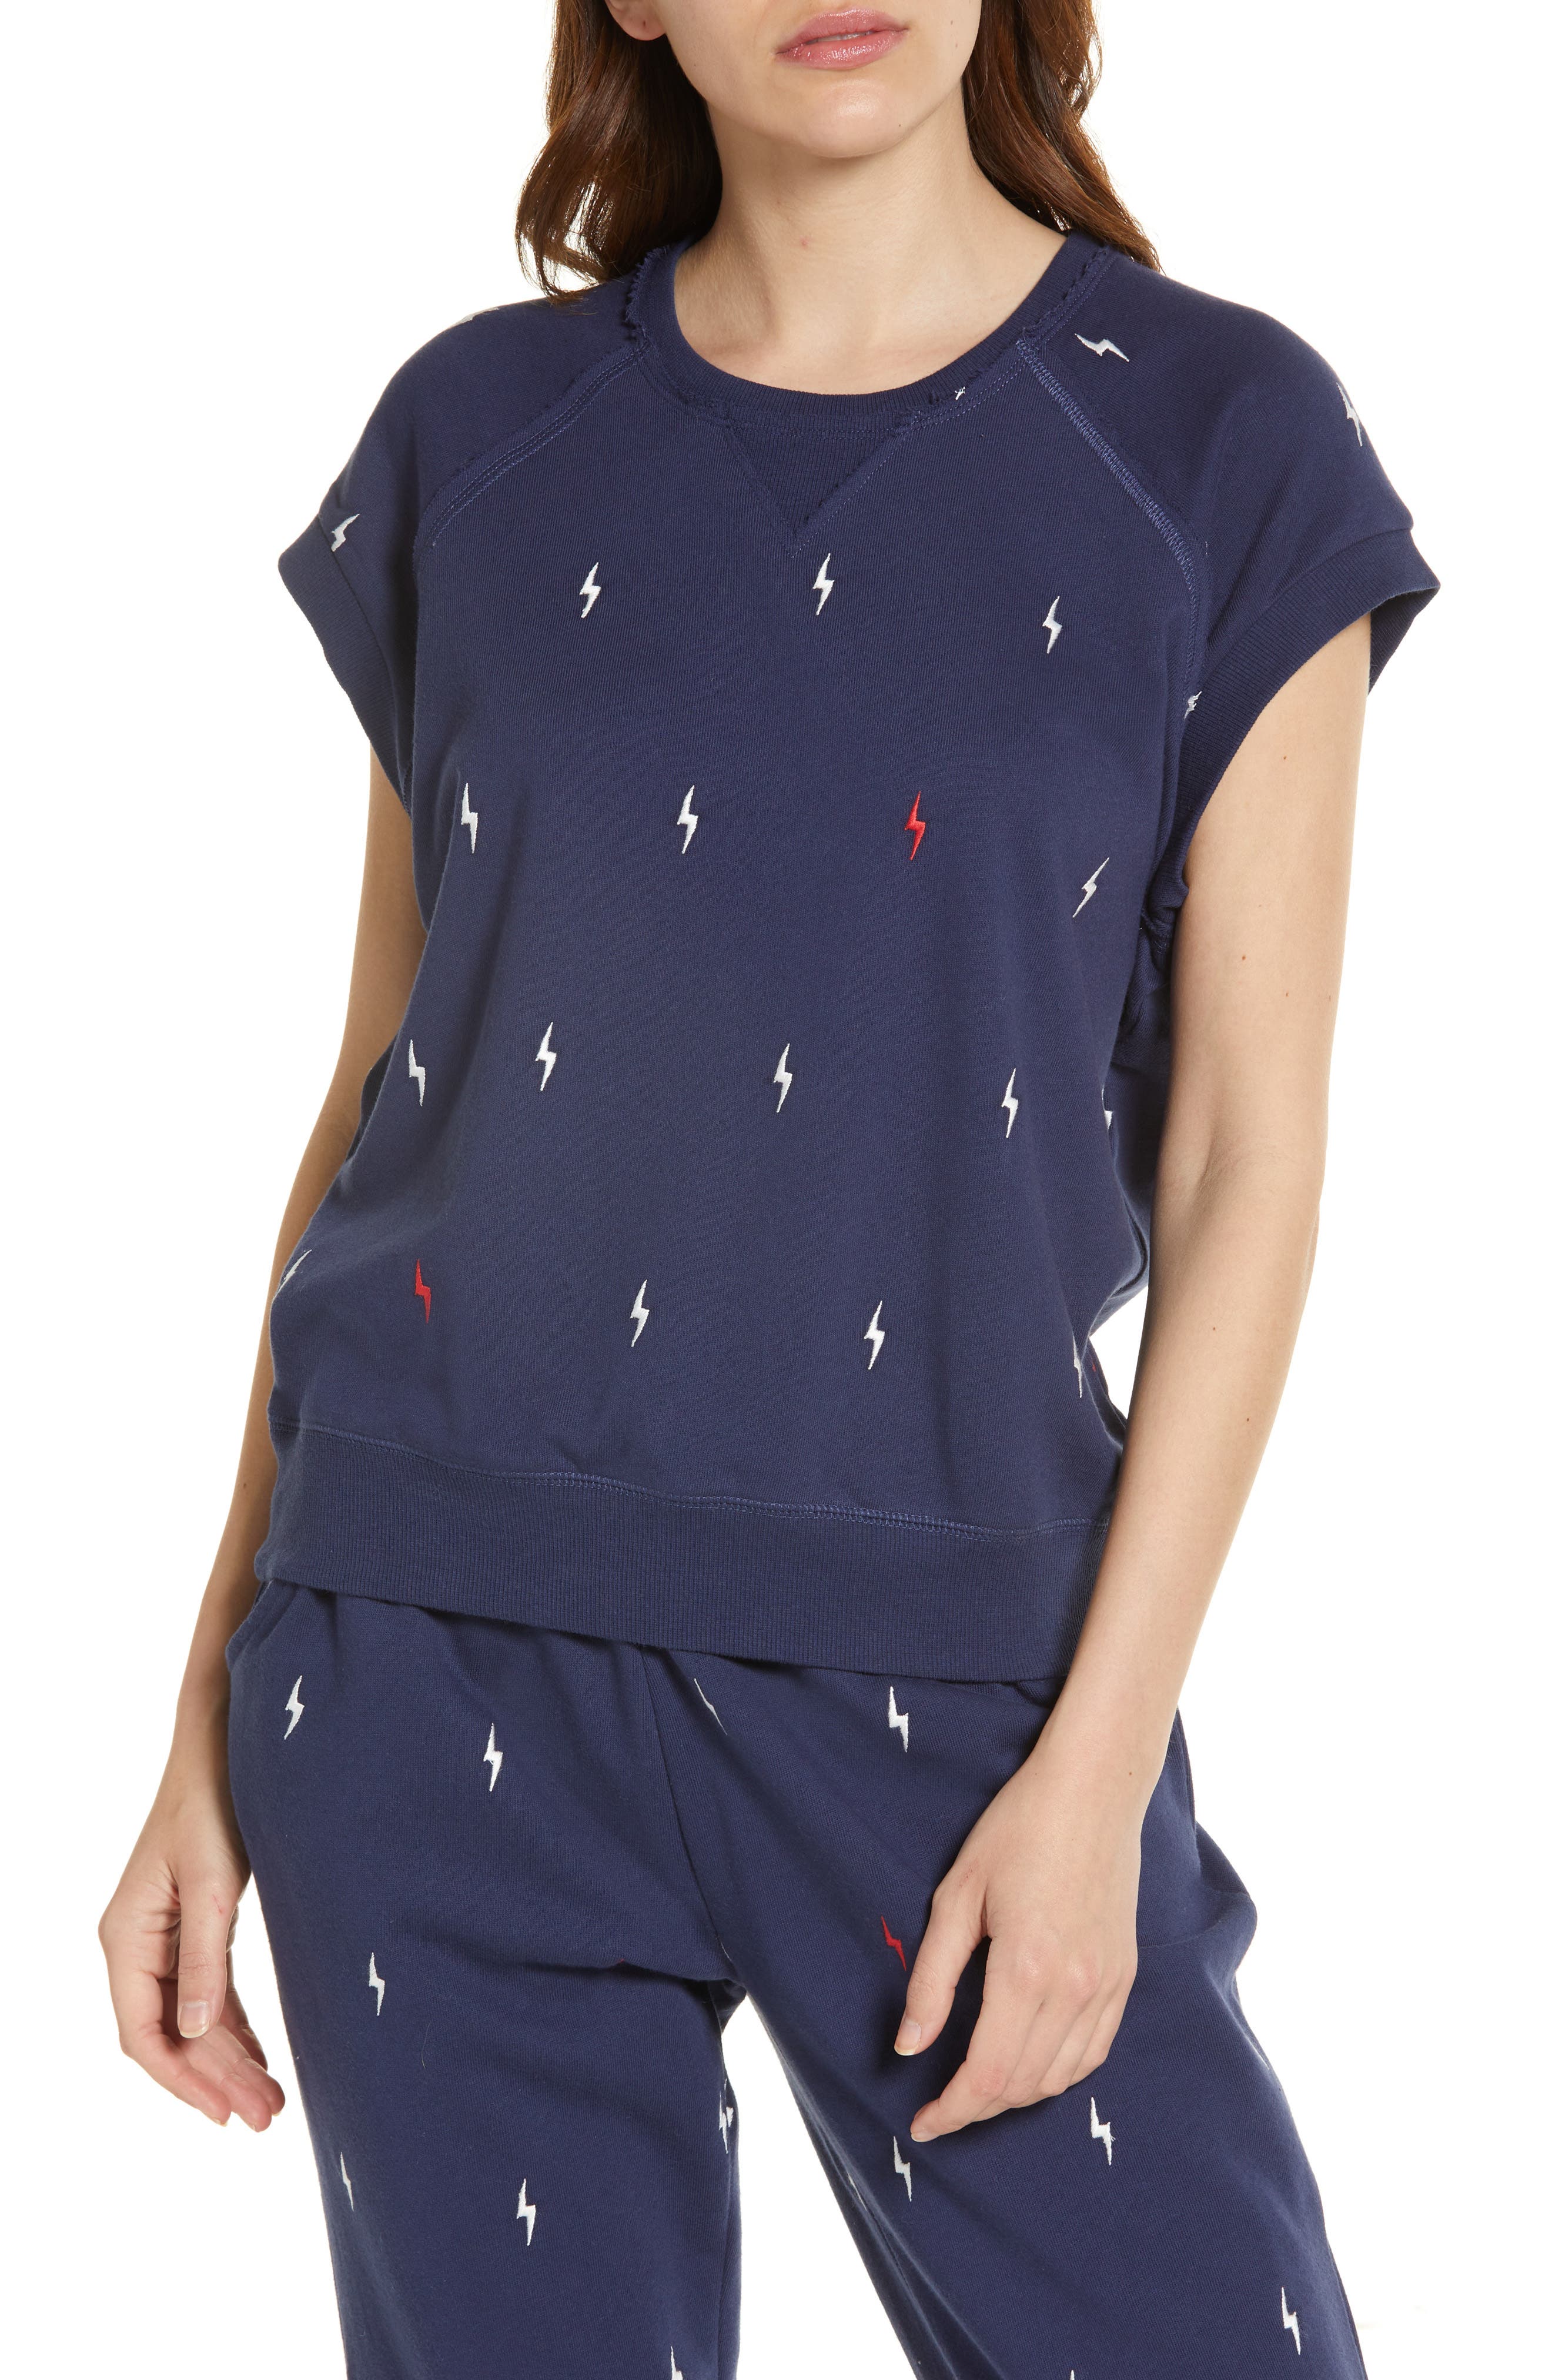 Slouch Top Womens Cyberjammies Stella Blue Jersey Pyjama Top Loungewear 8-22 